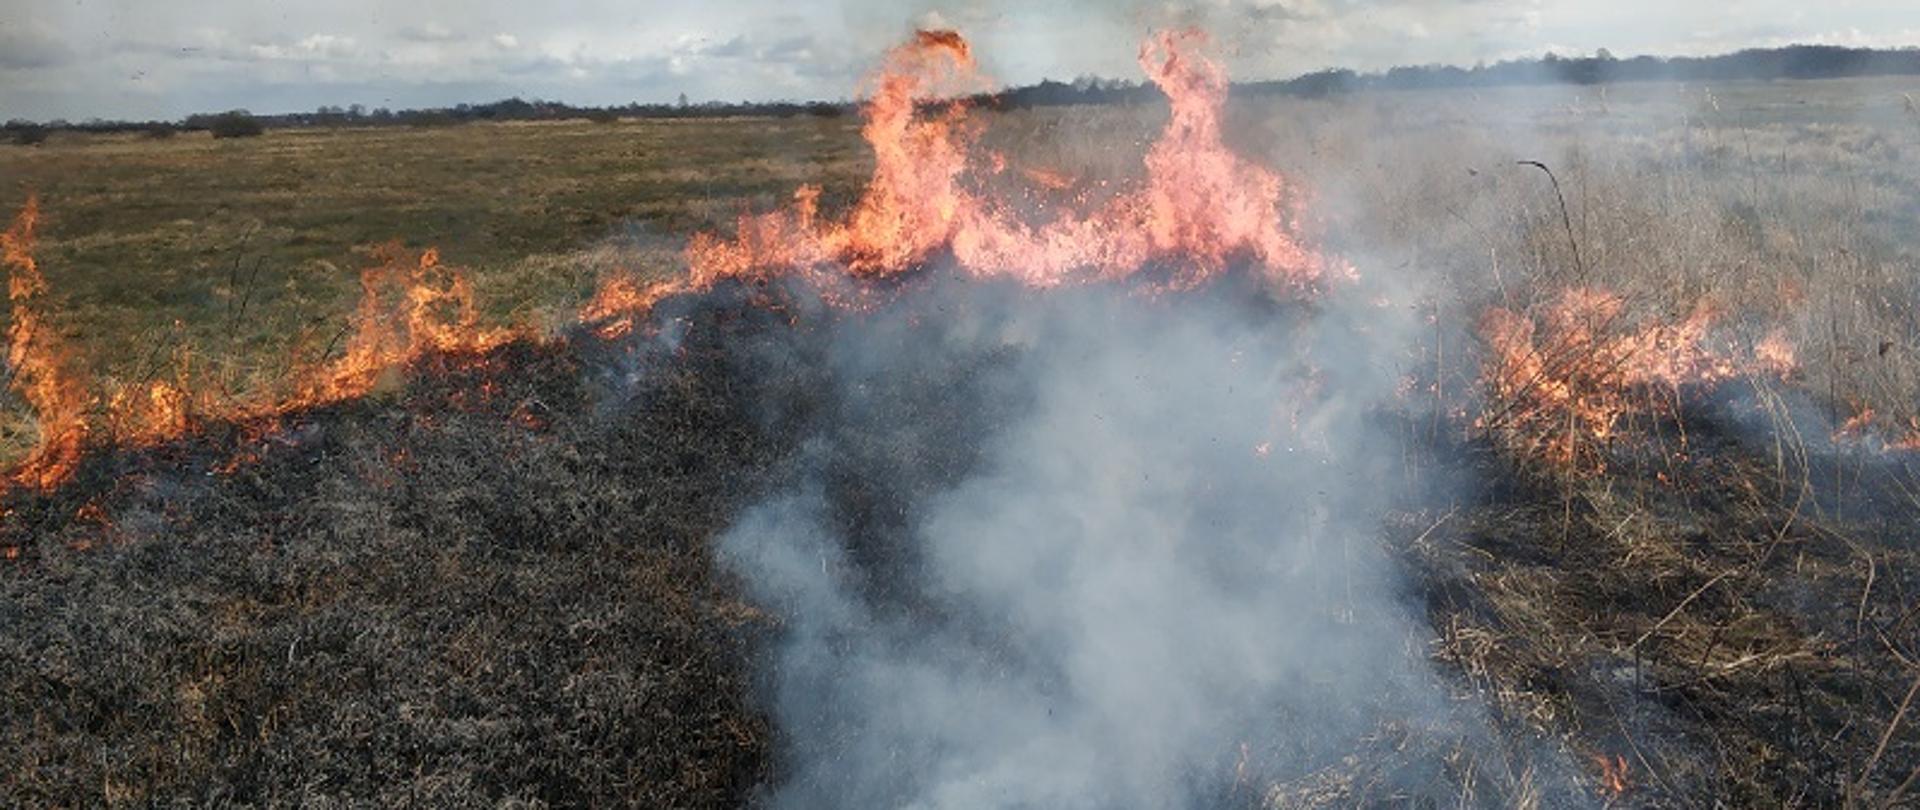 Zdjęcie przedstawia panoramę płonących traw i pogorzelisko. W oddali widoczny las